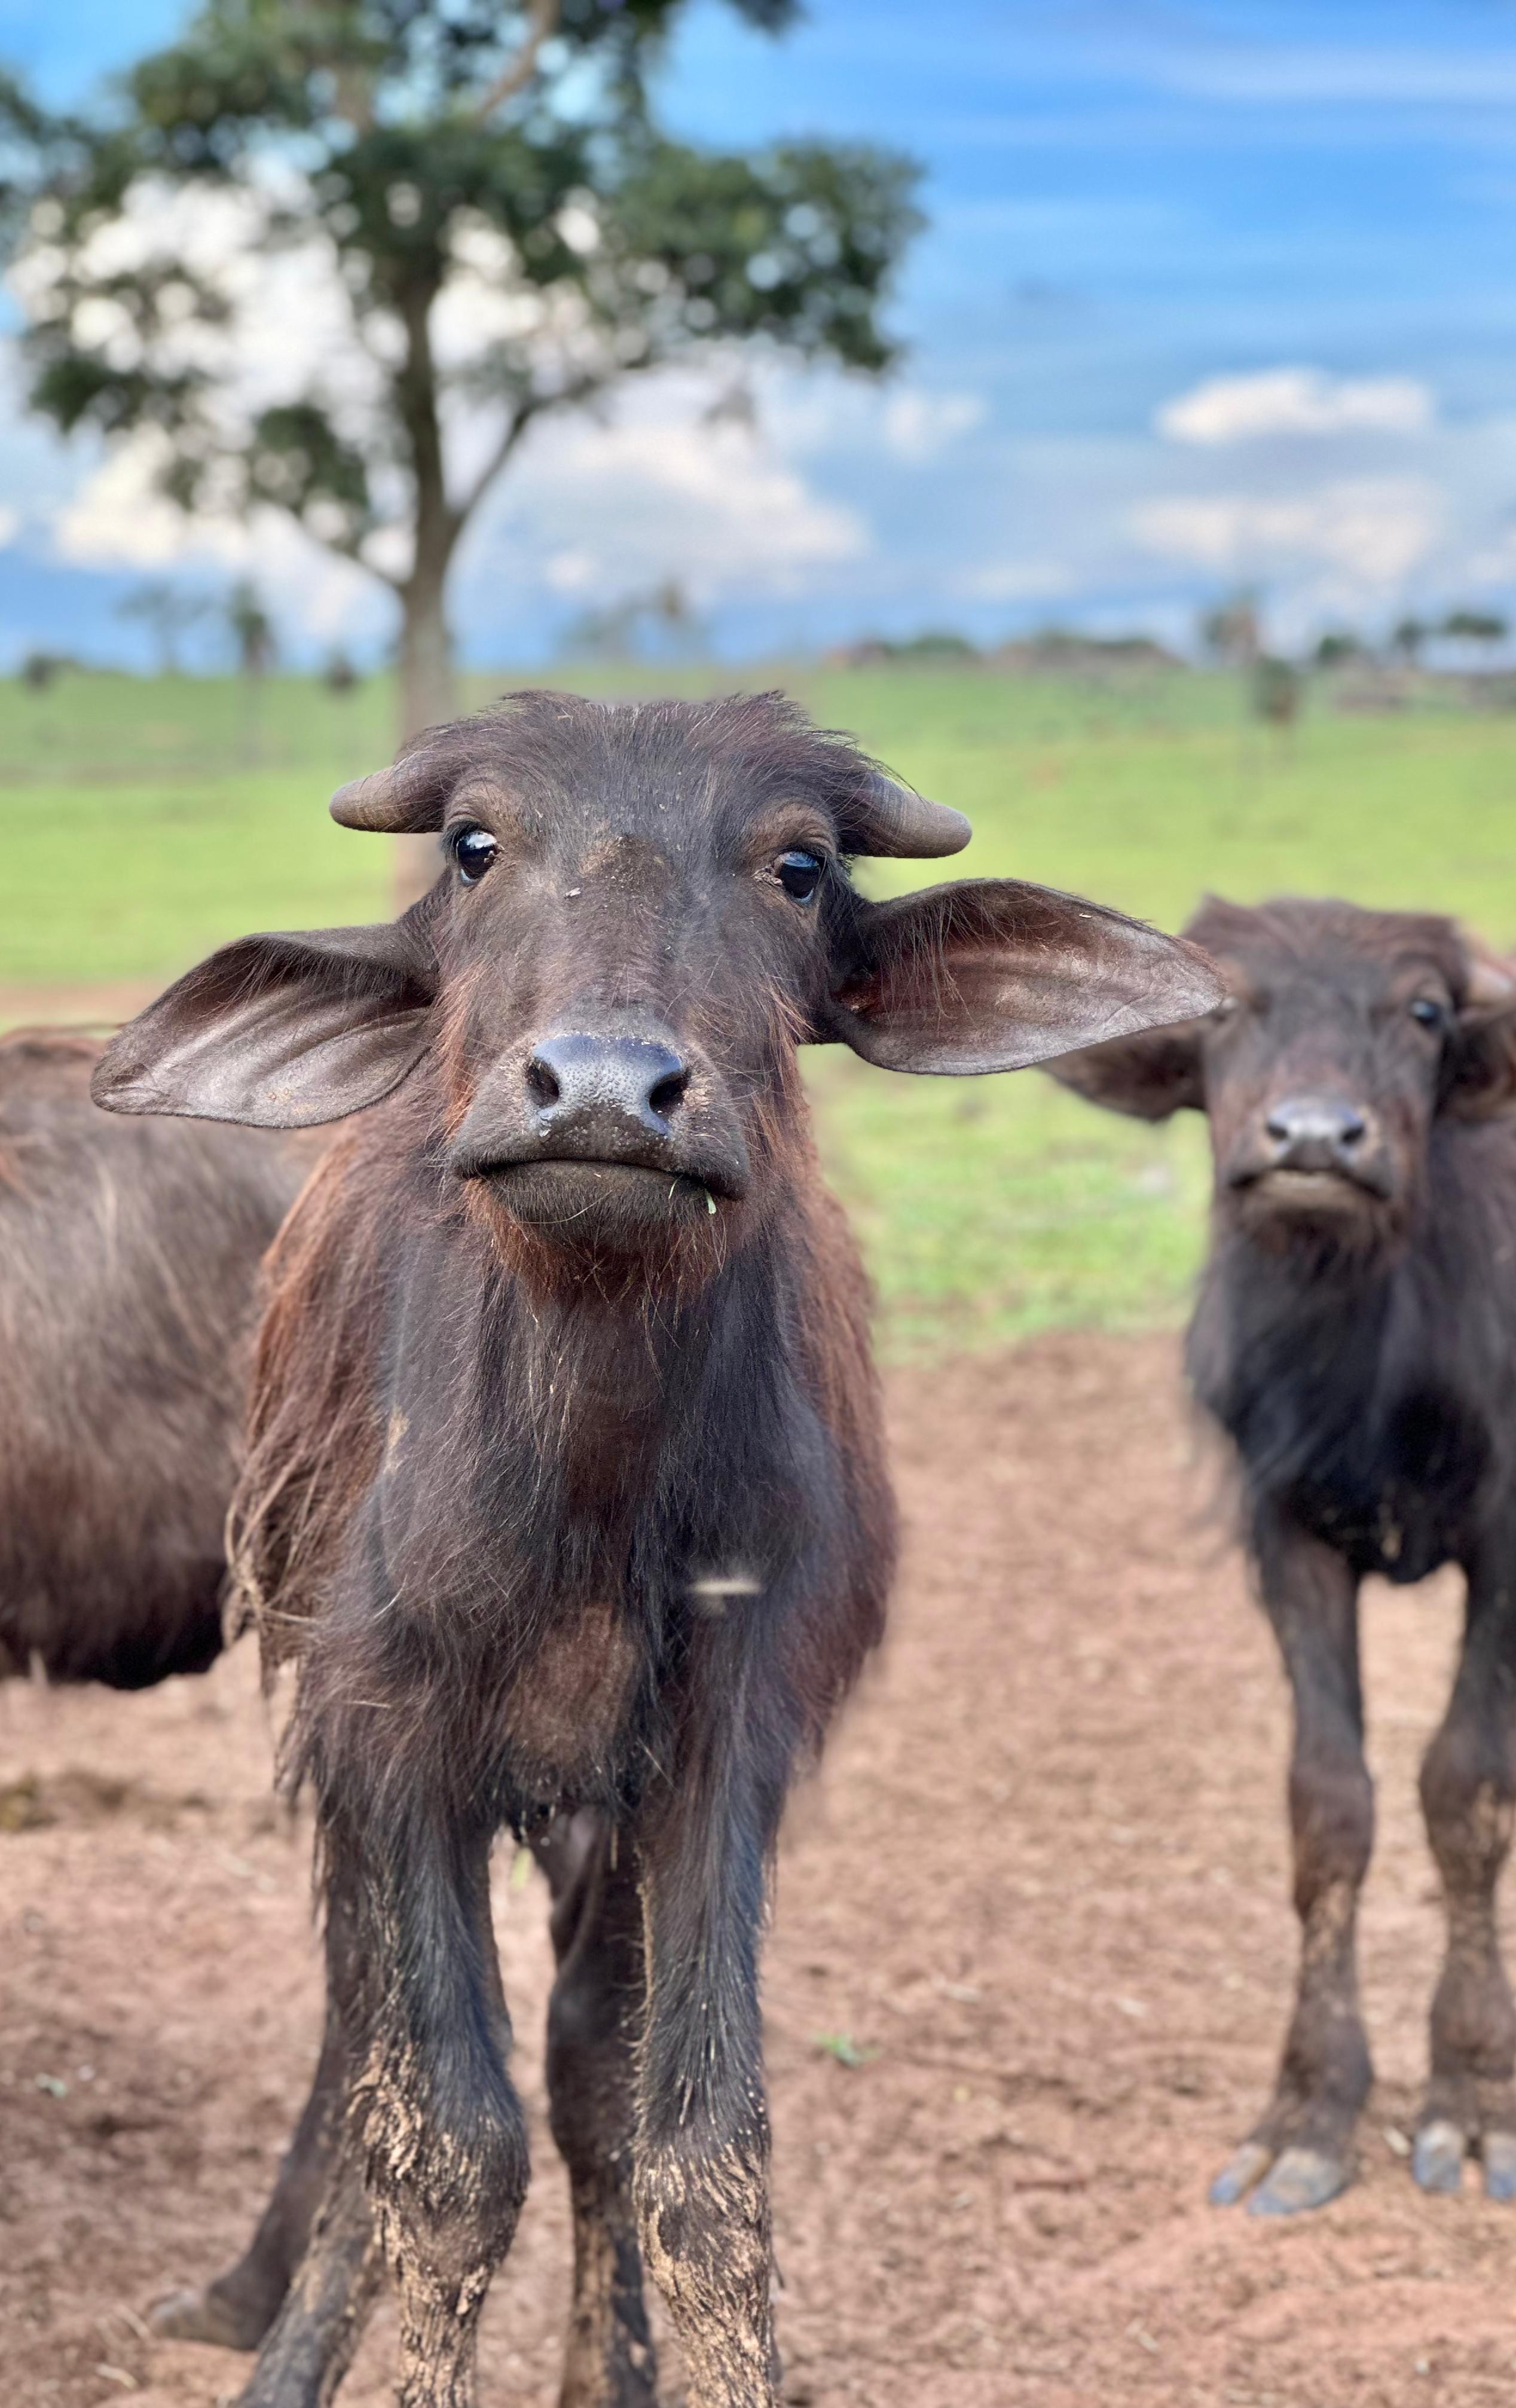 Riacho, poças naturais e clima adequado: a nova vida das búfalas resgatadas após maus-tratos em SP